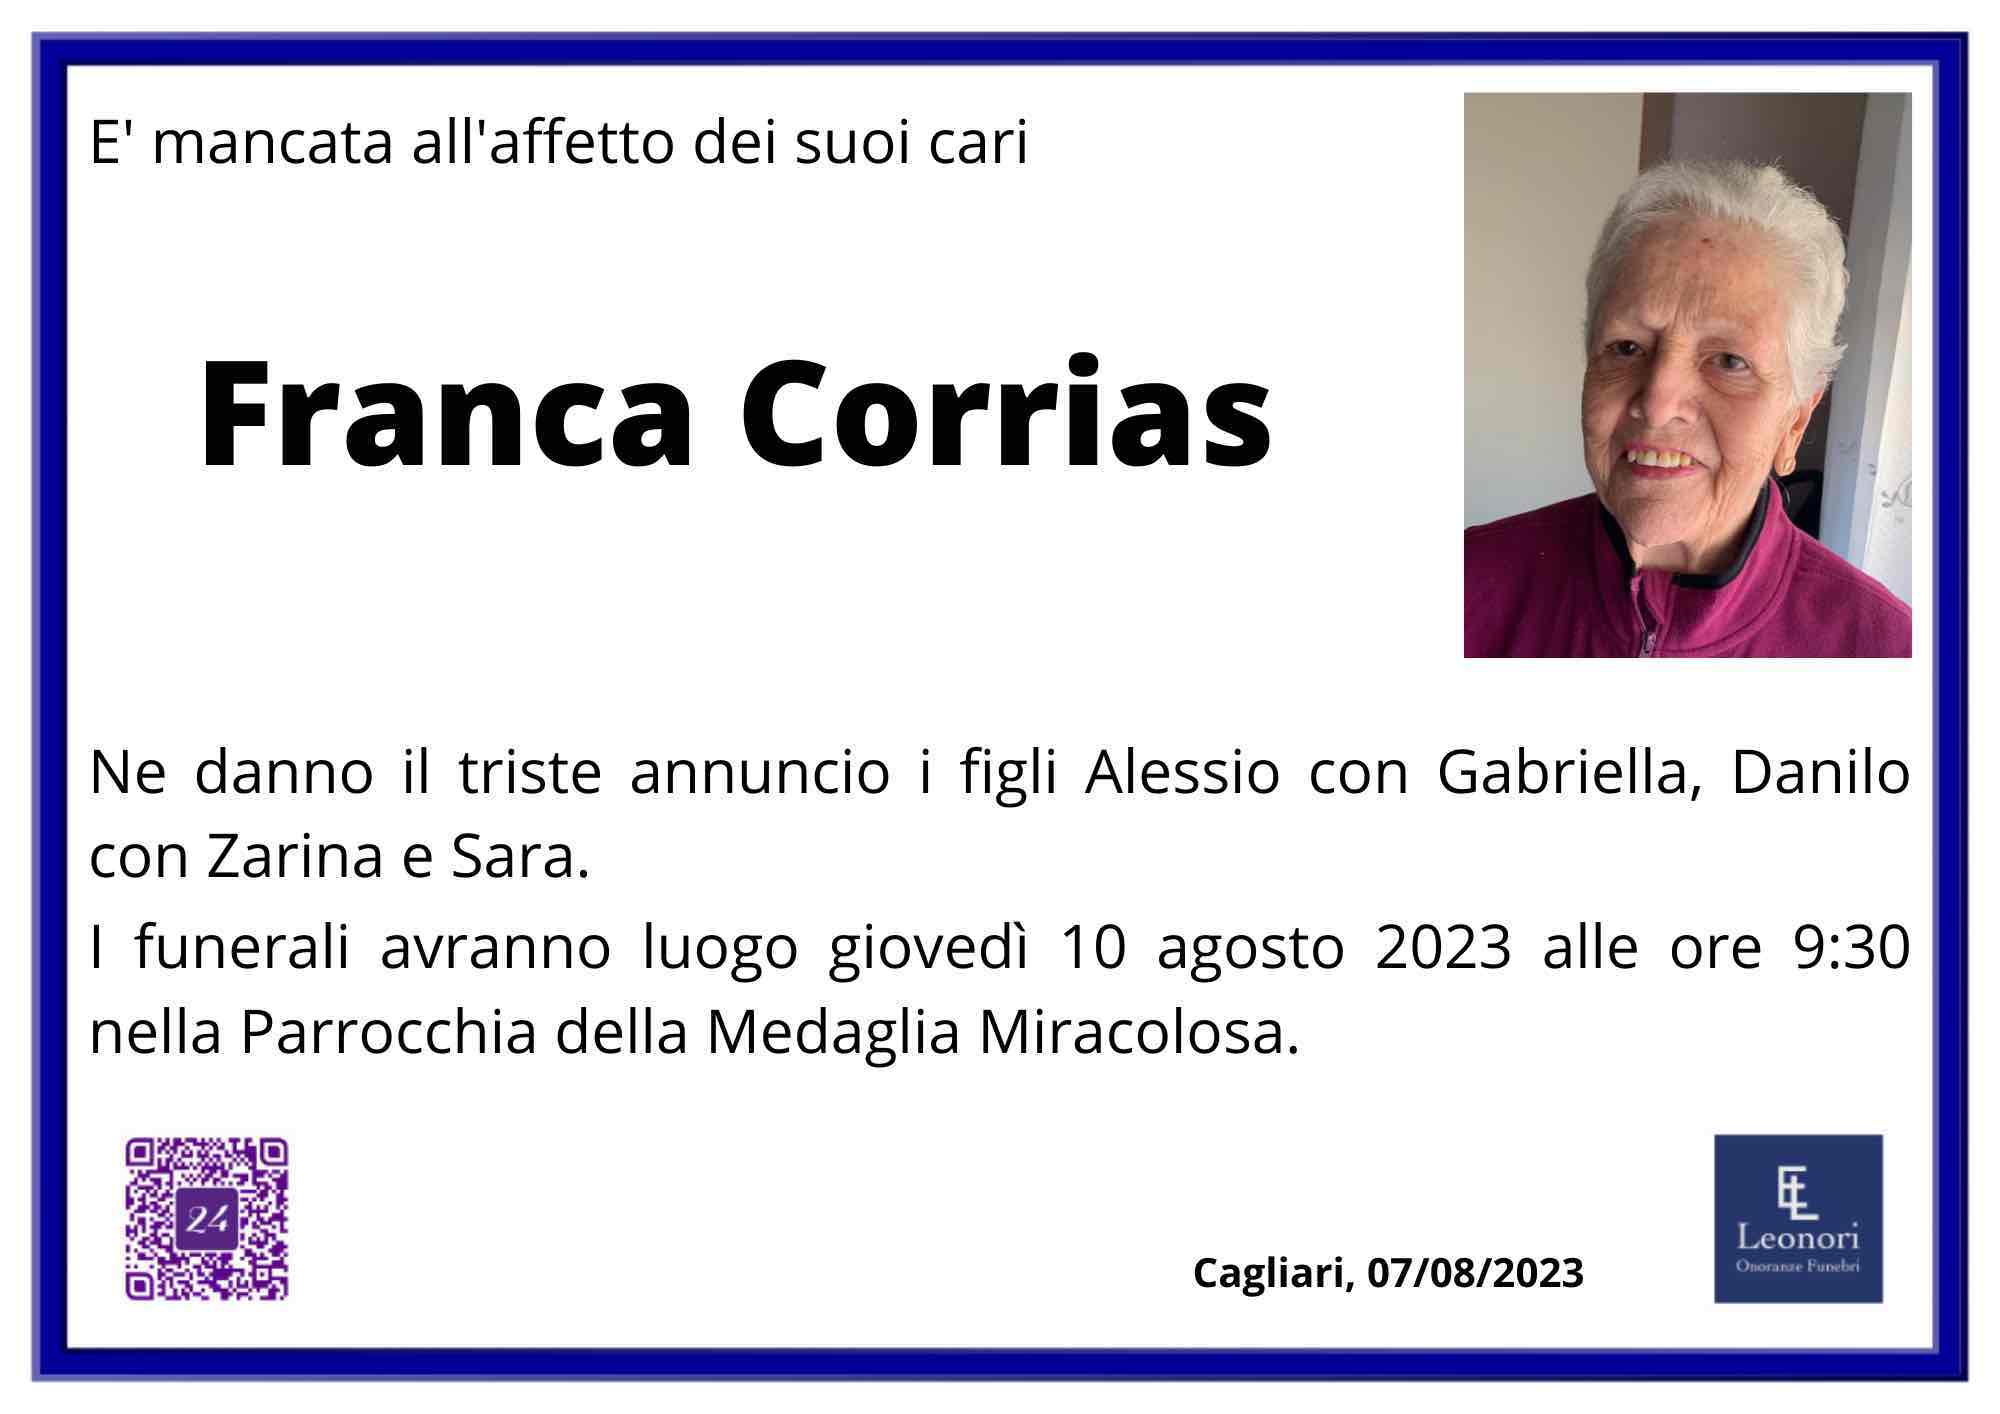 Francesca Corrias